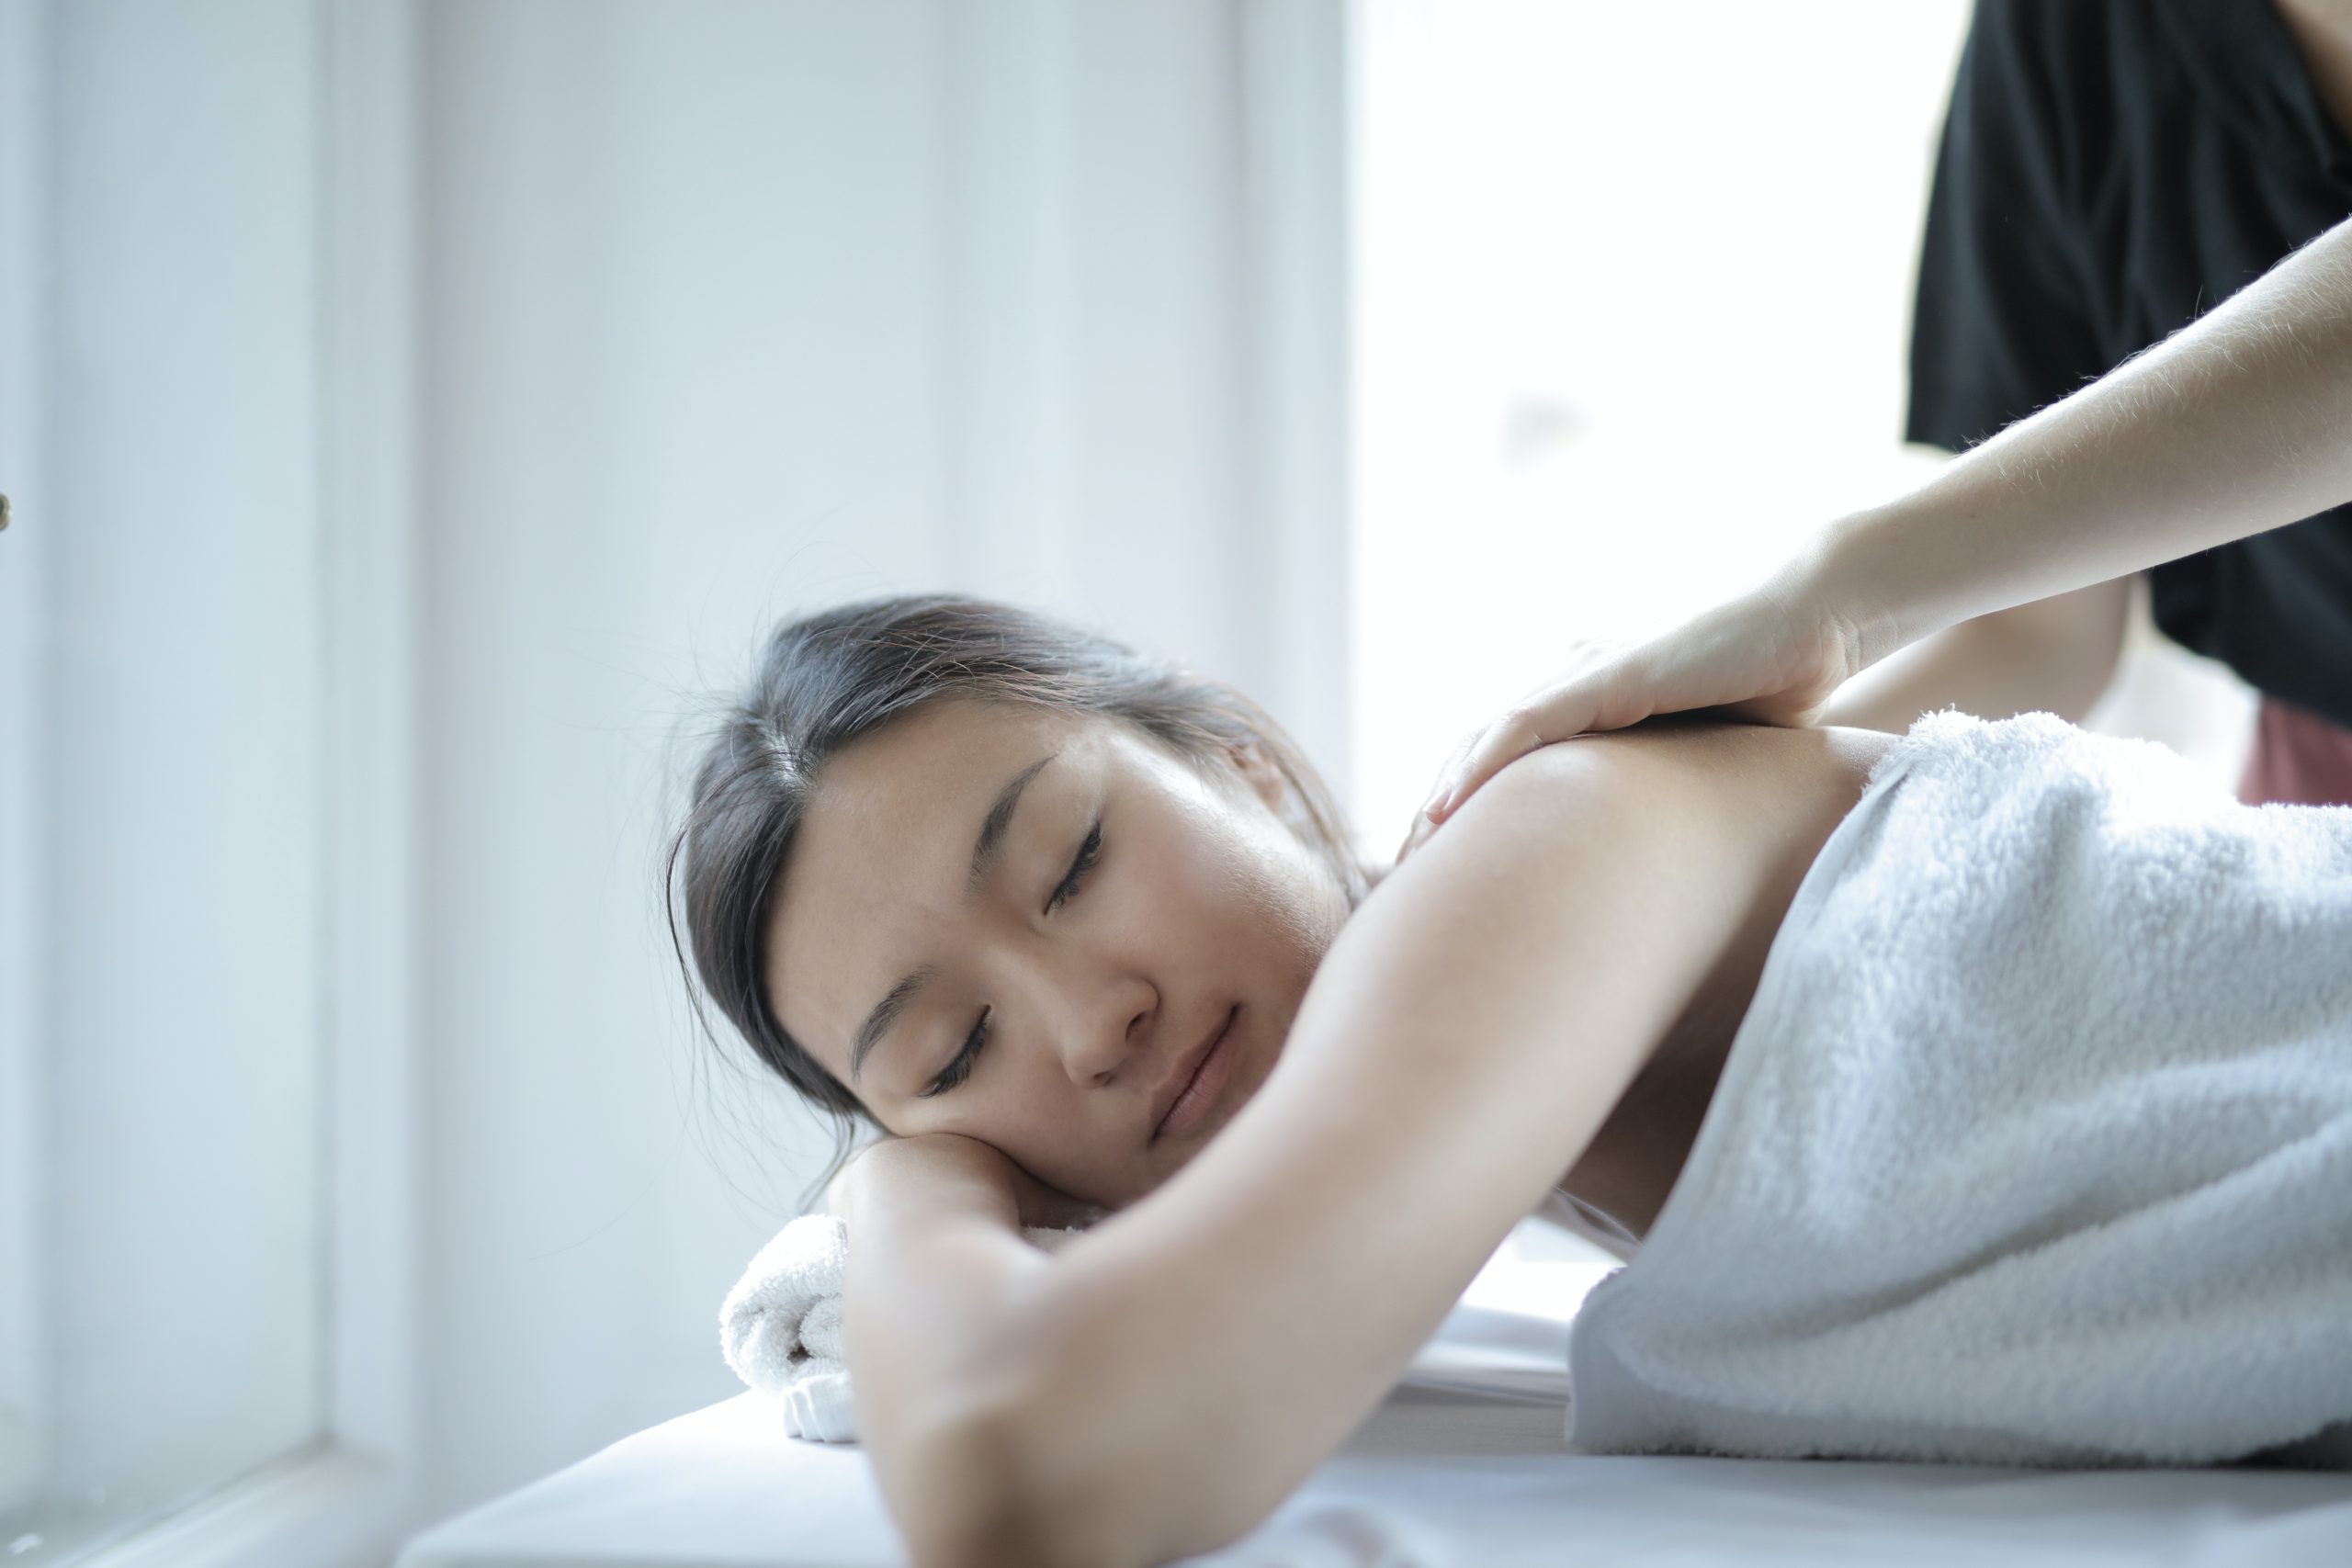 Massage olie werkt ontspannend en kan ook voor sportmassages gebruikt worden